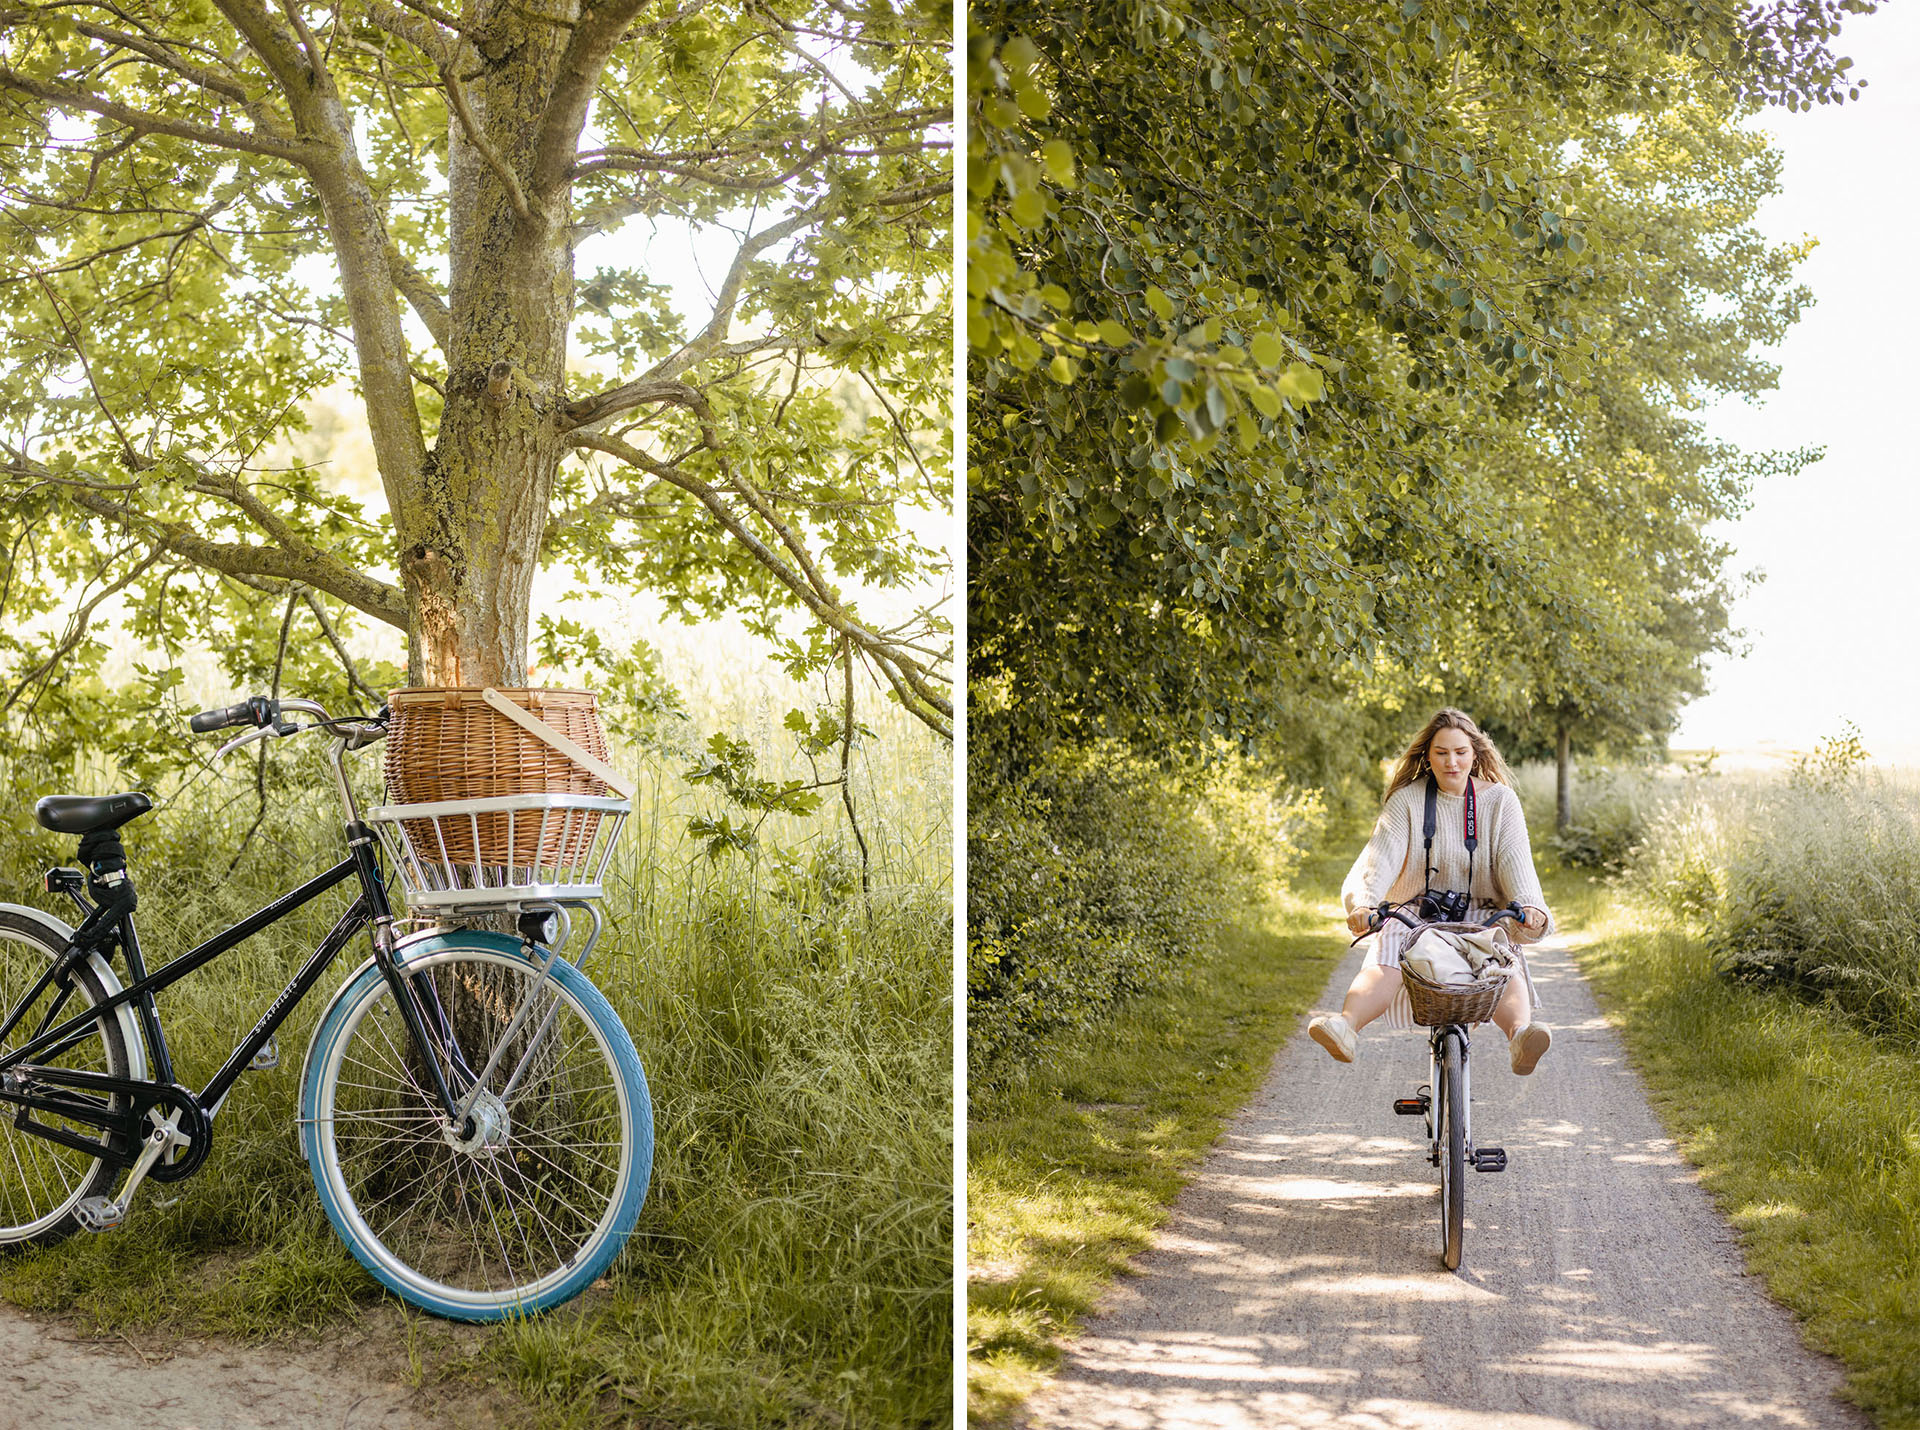 Picknick am Strand von Stein: Mit dem Fahrrad von Laboe nach Stein